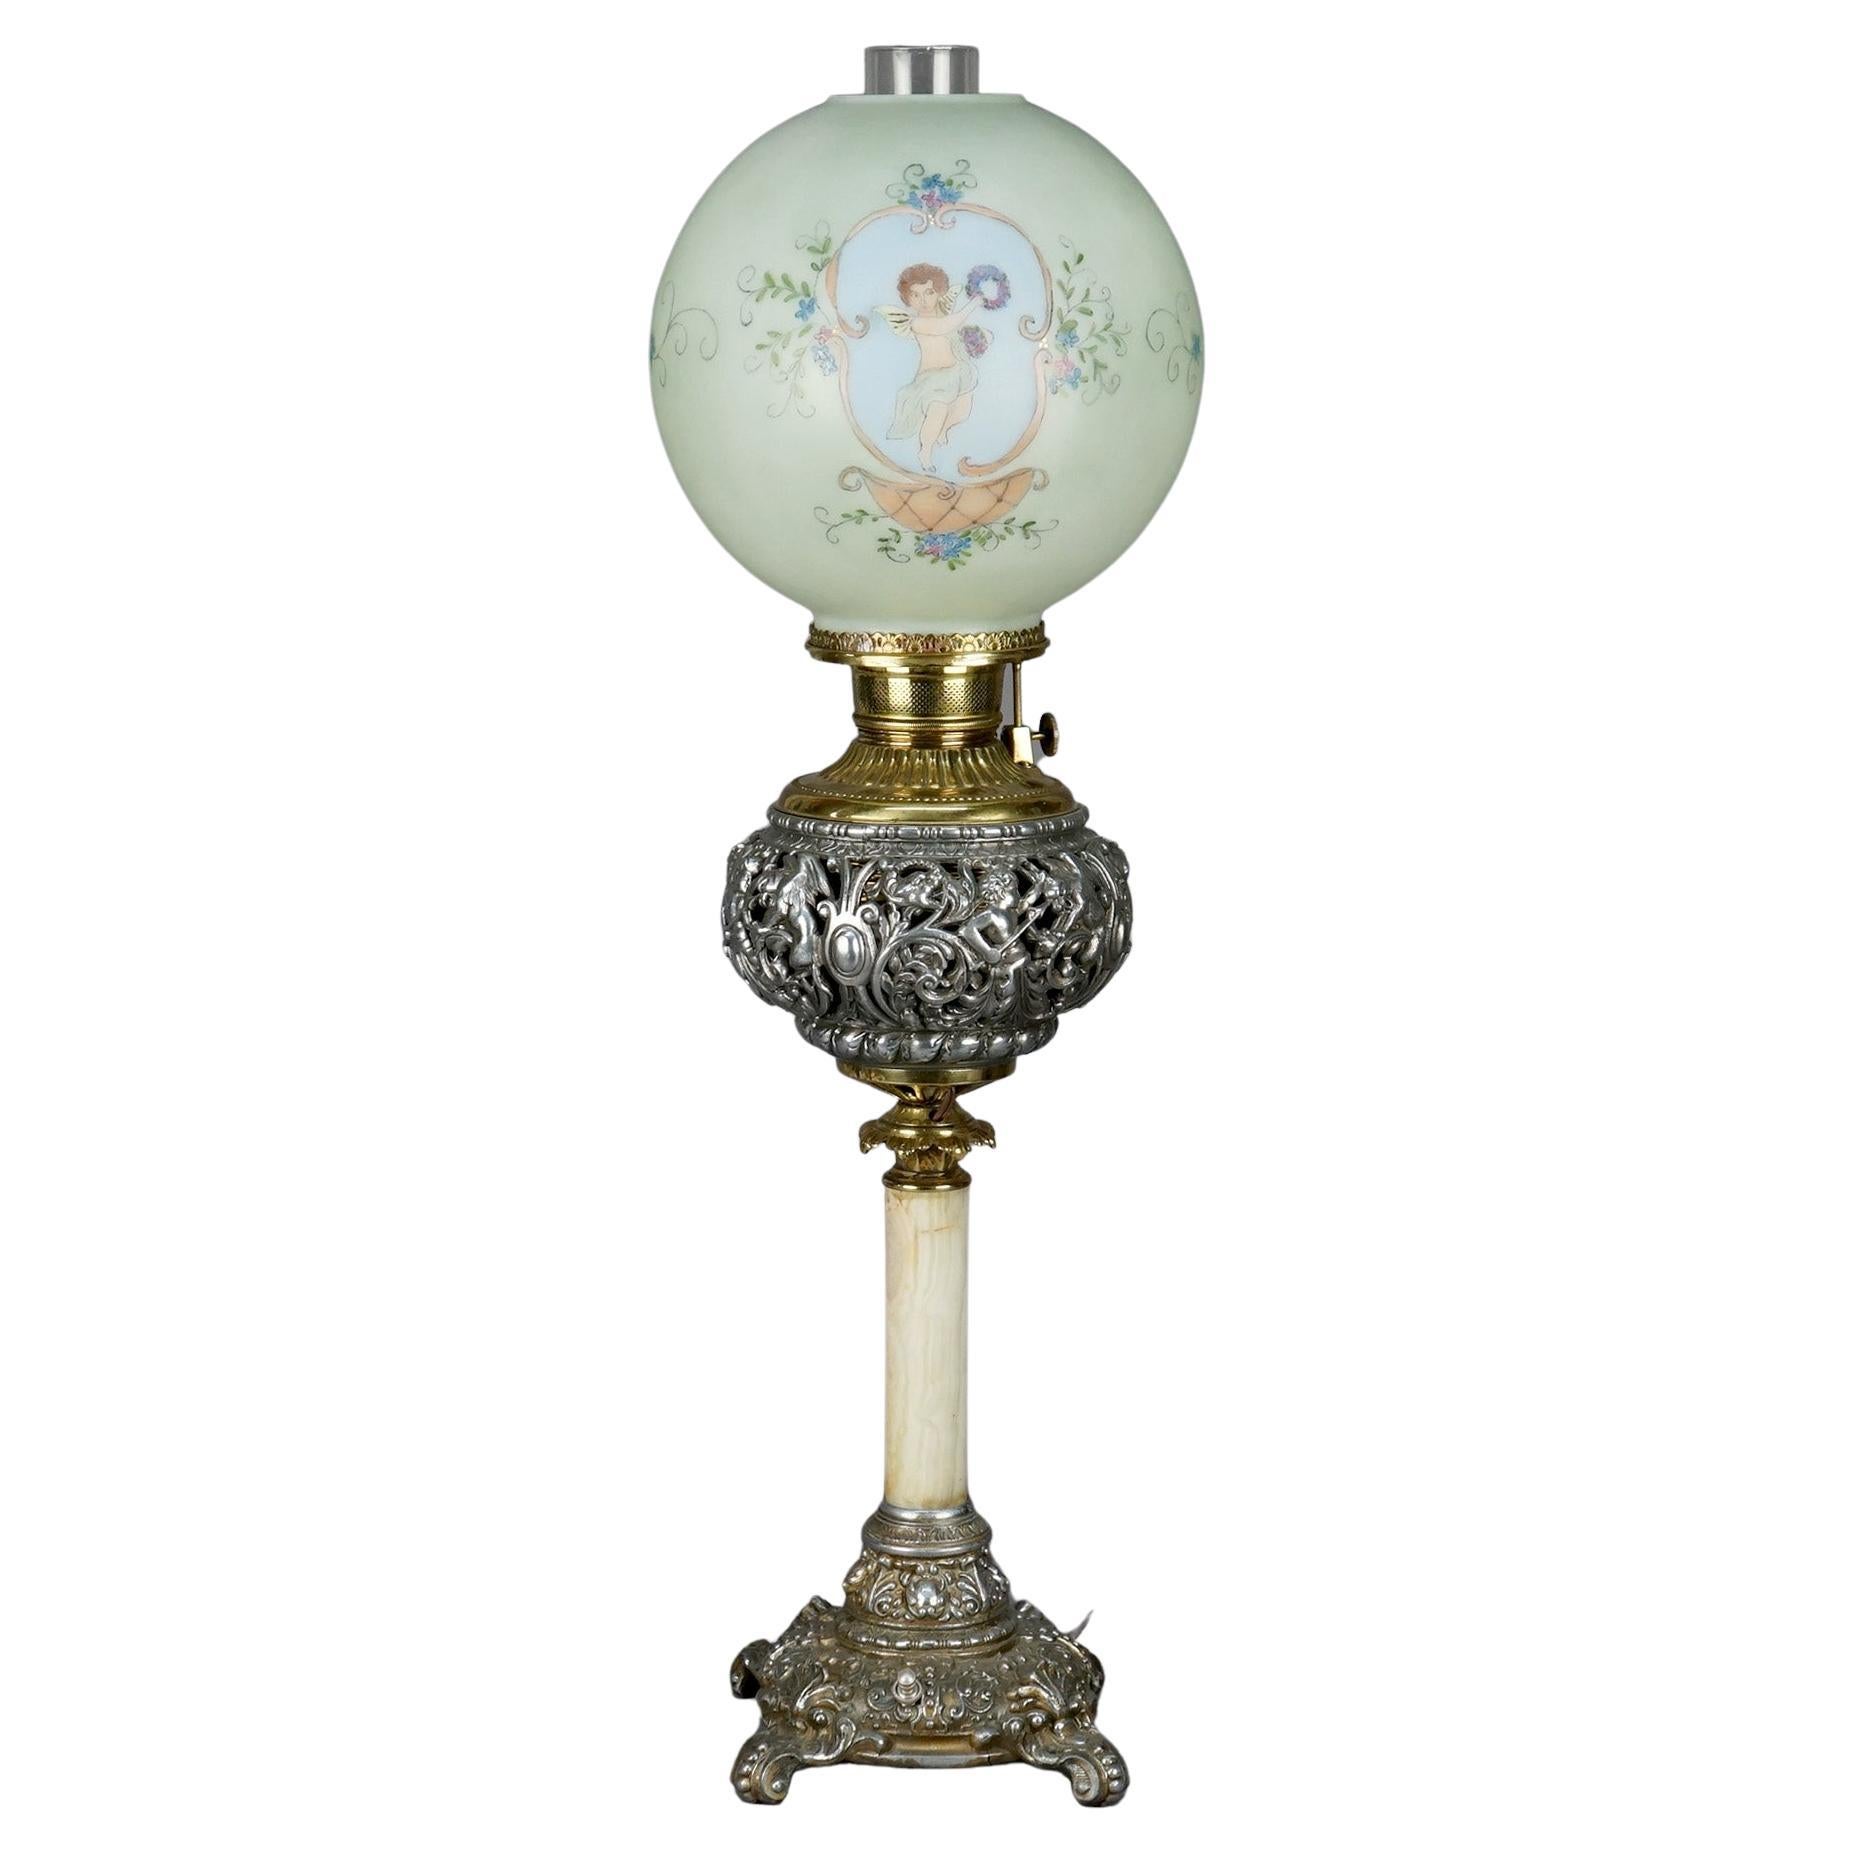 Lampe de salon victorienne ancienne en onyx, doré et métal argenté avec chérubin, c. 1890